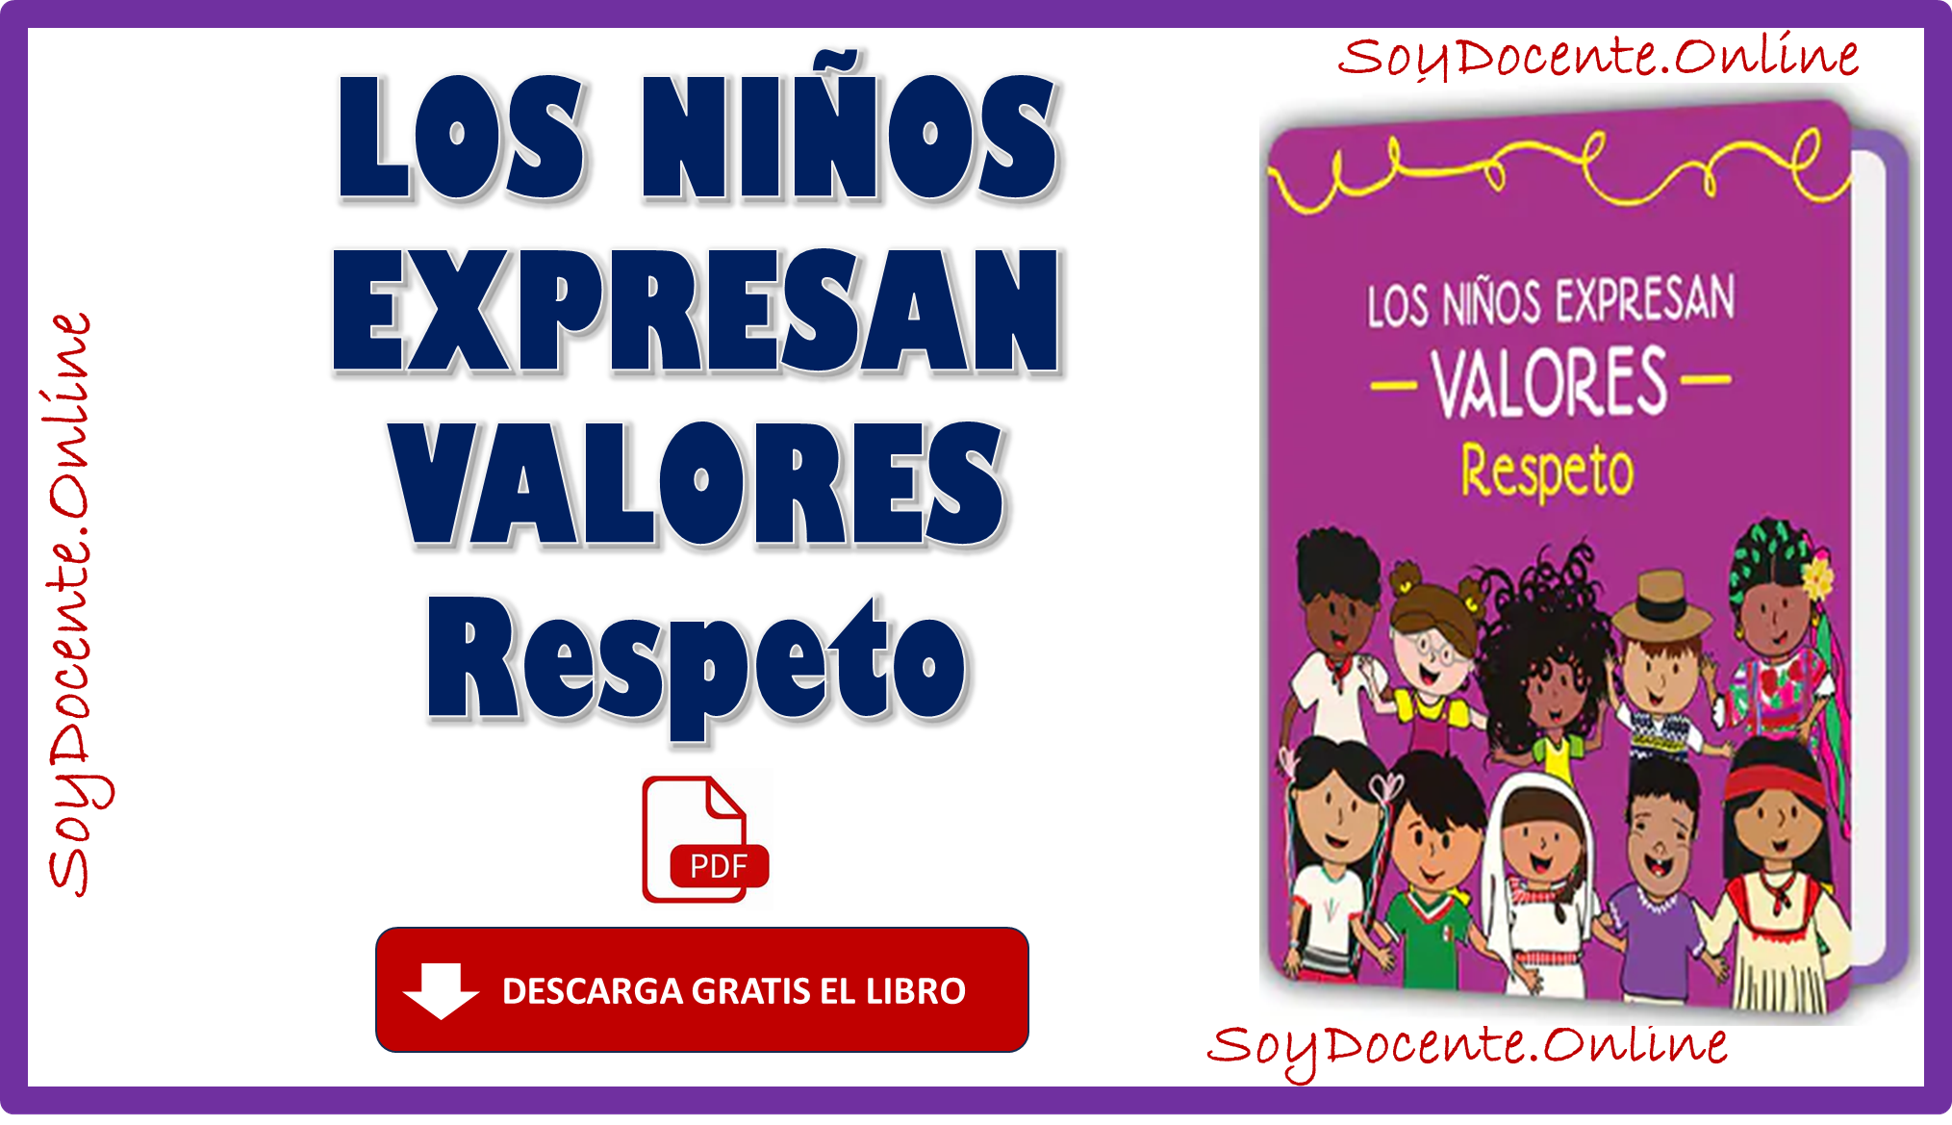 Libro Los niños expresan valores respeto complementario de Preescolar, emitido por la SEP, distribuido por la CONALITEG. Descarga en PDF